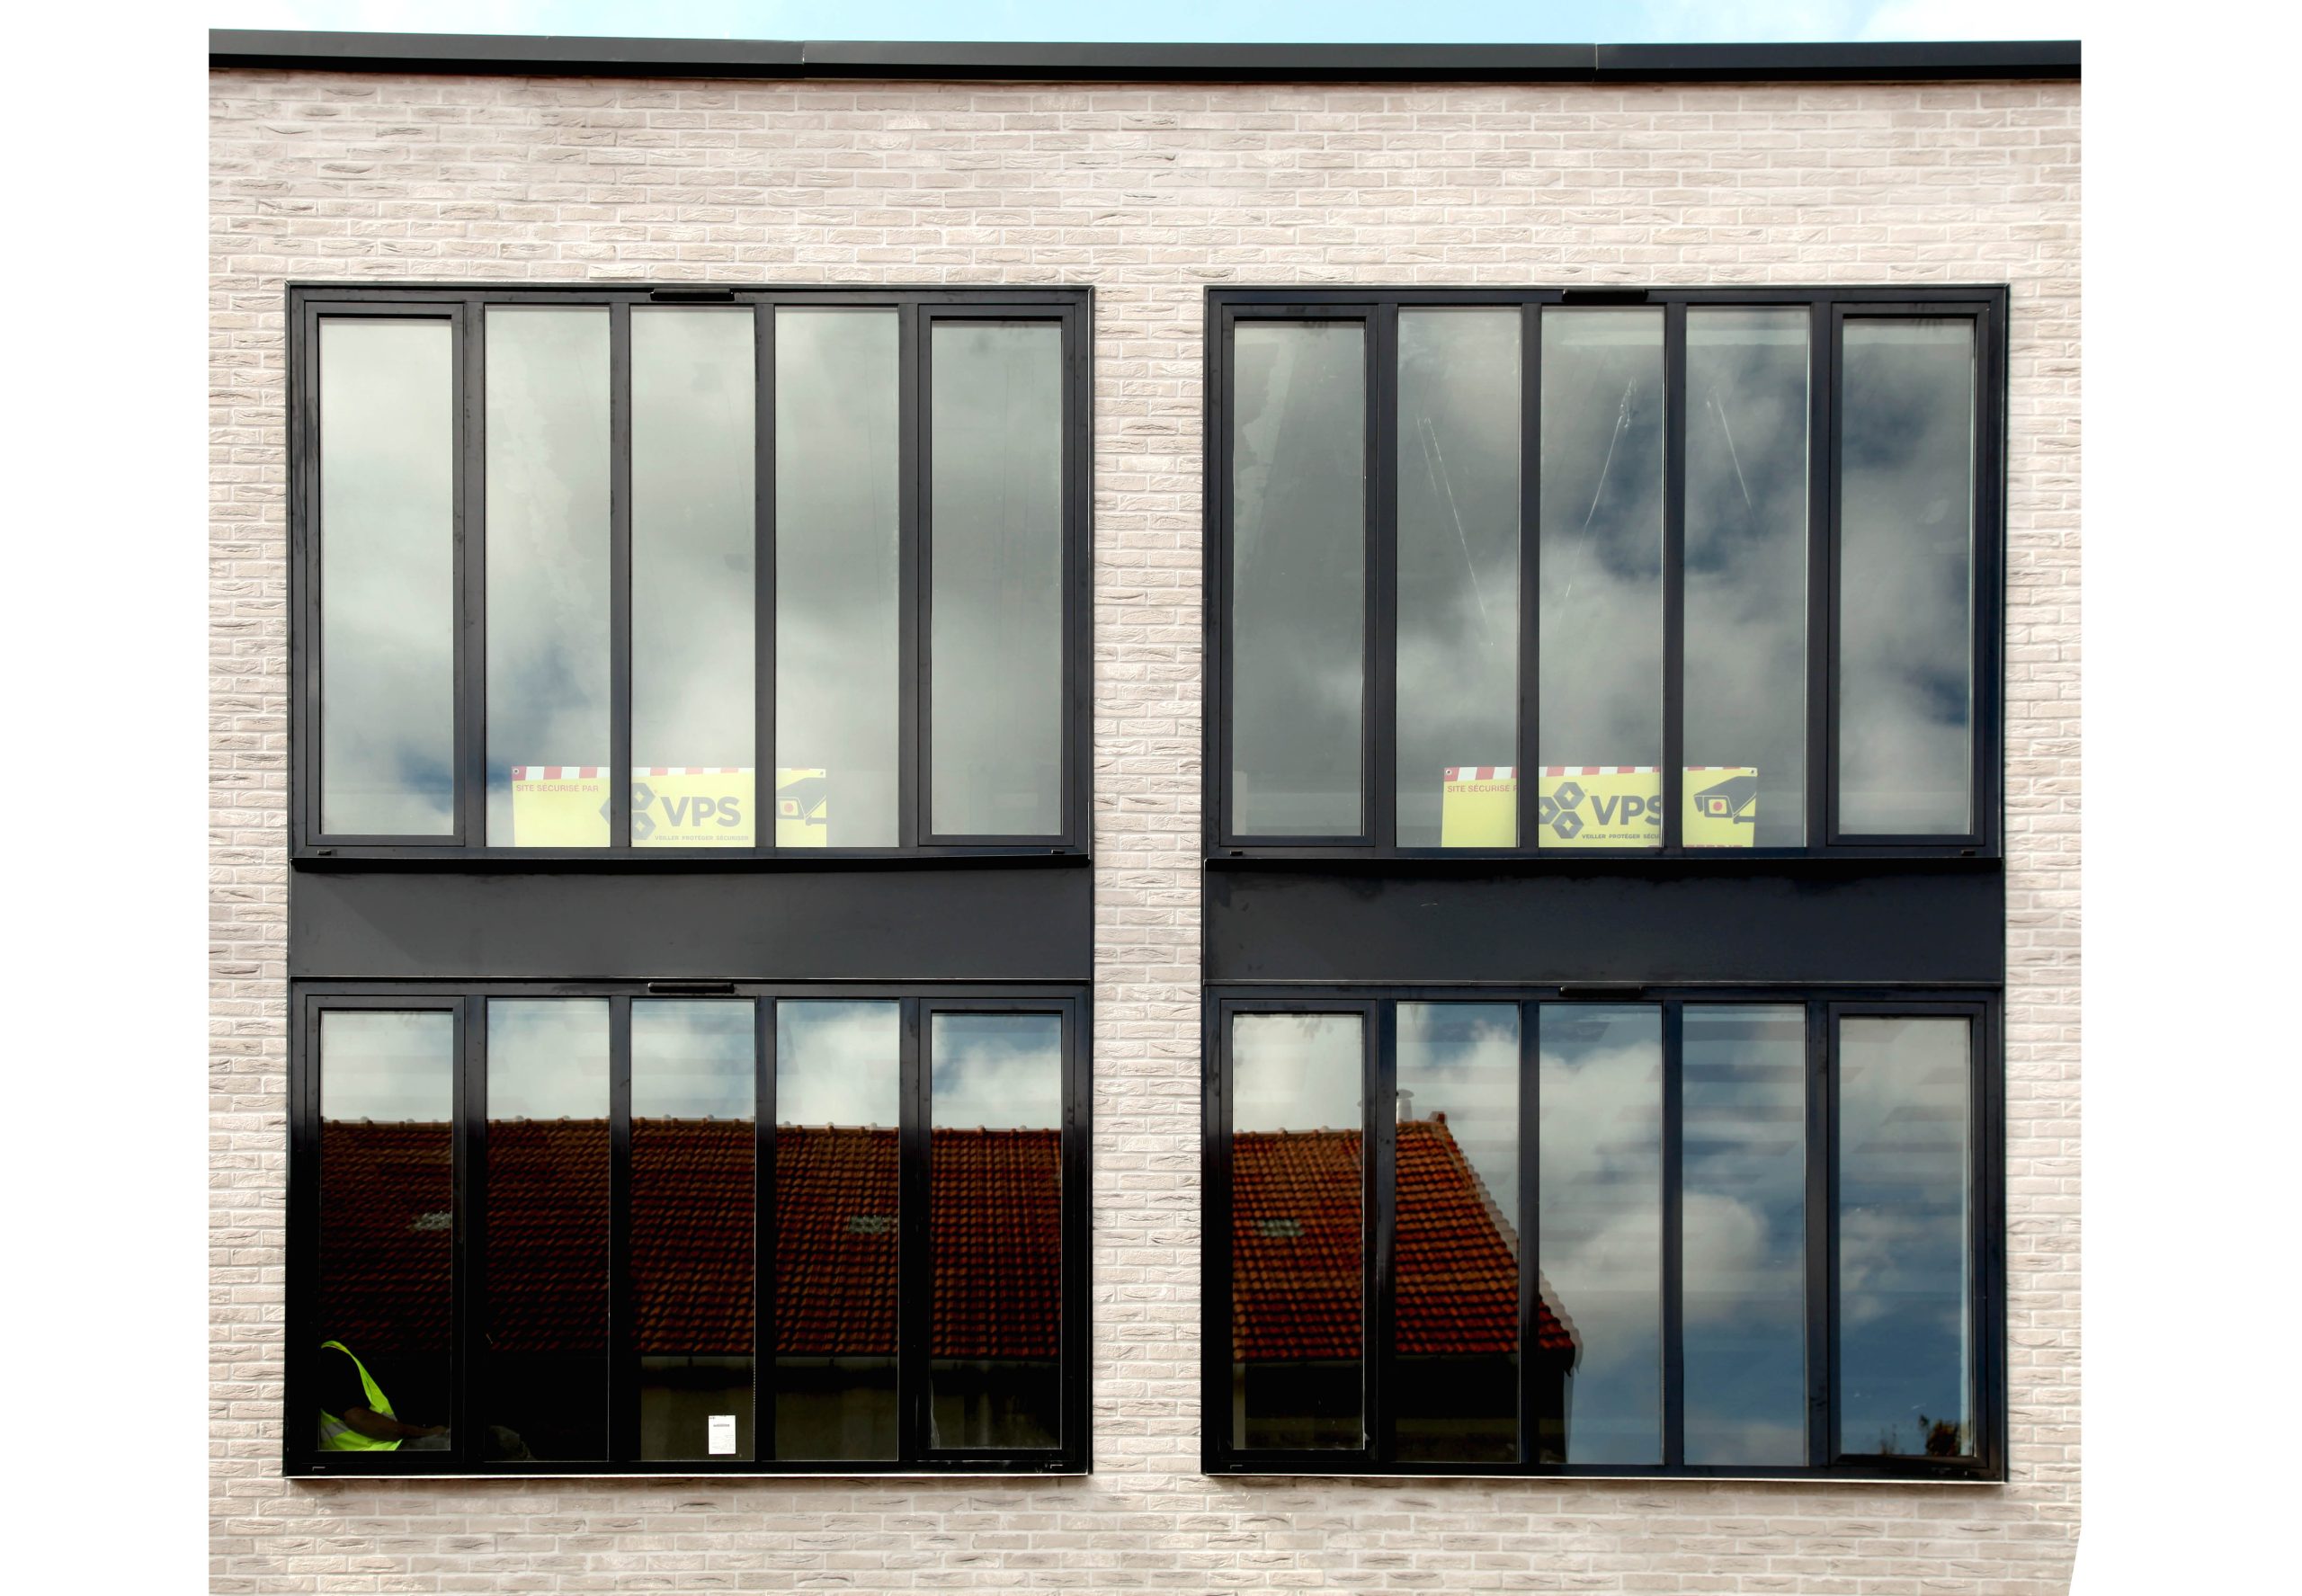 Réhabilitation et transformation d'un immeuble de bureau en 4 lofts  Modification façade rue et cour Réfection parties communes